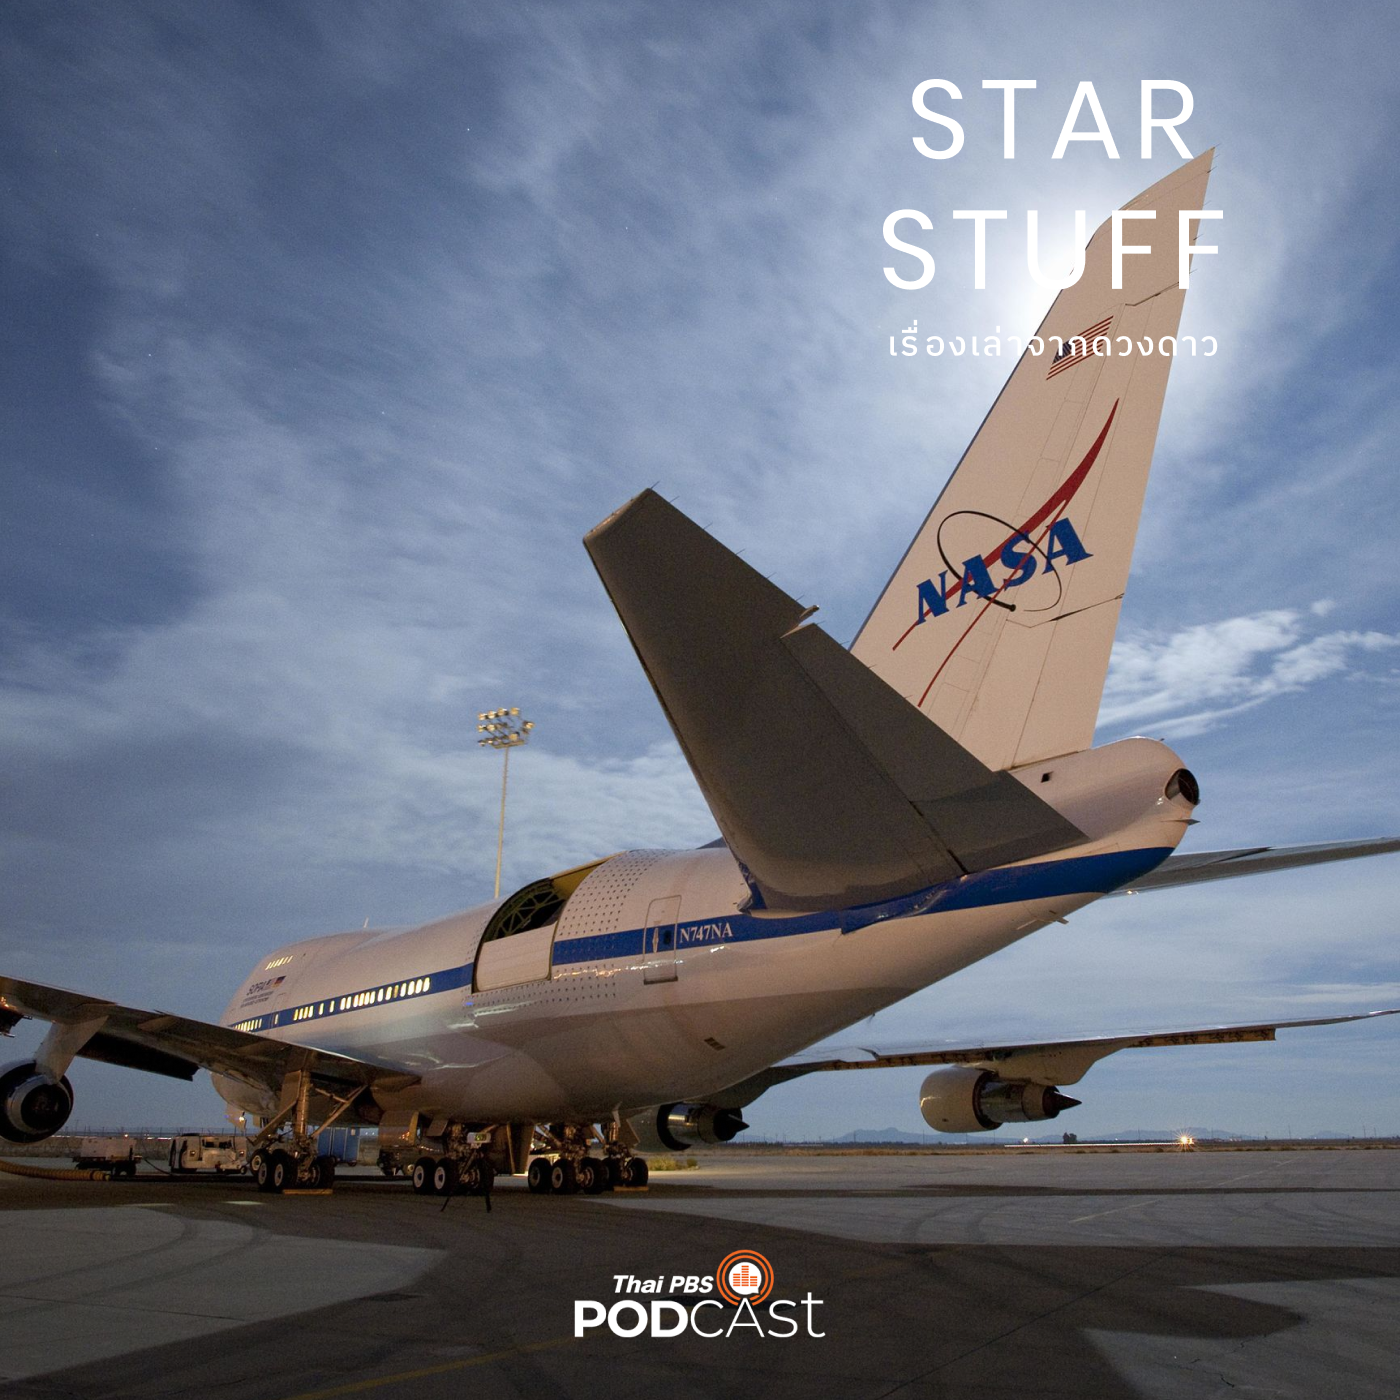 Starstuff เรื่องเล่าจากดวงดาว EP. 64: เปิดประวัติ SOFIA หอดูดาวลอยฟ้าบนเครื่องบินโบอ